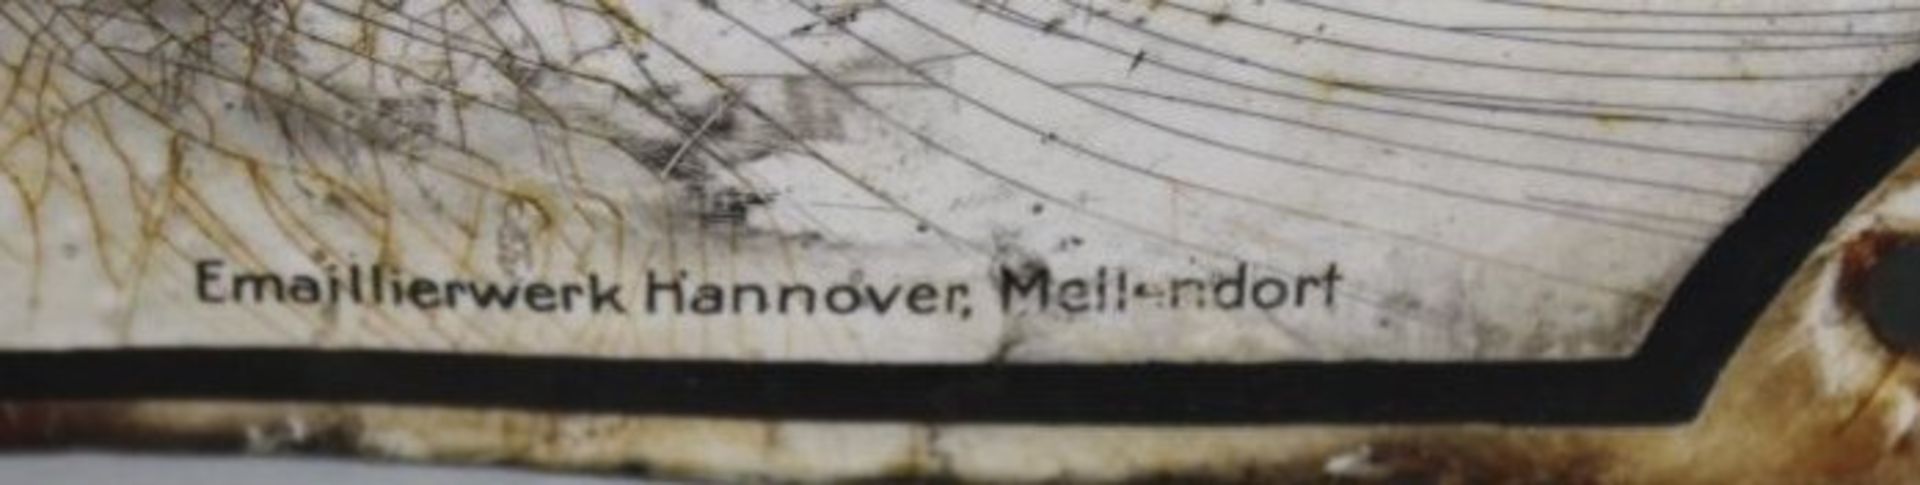 Emaille-Schild "Reichsnährstand", Ortsbauernführer, 3. Reich, Emaille beschlagen, Altersspuren, 40 x - Bild 3 aus 5